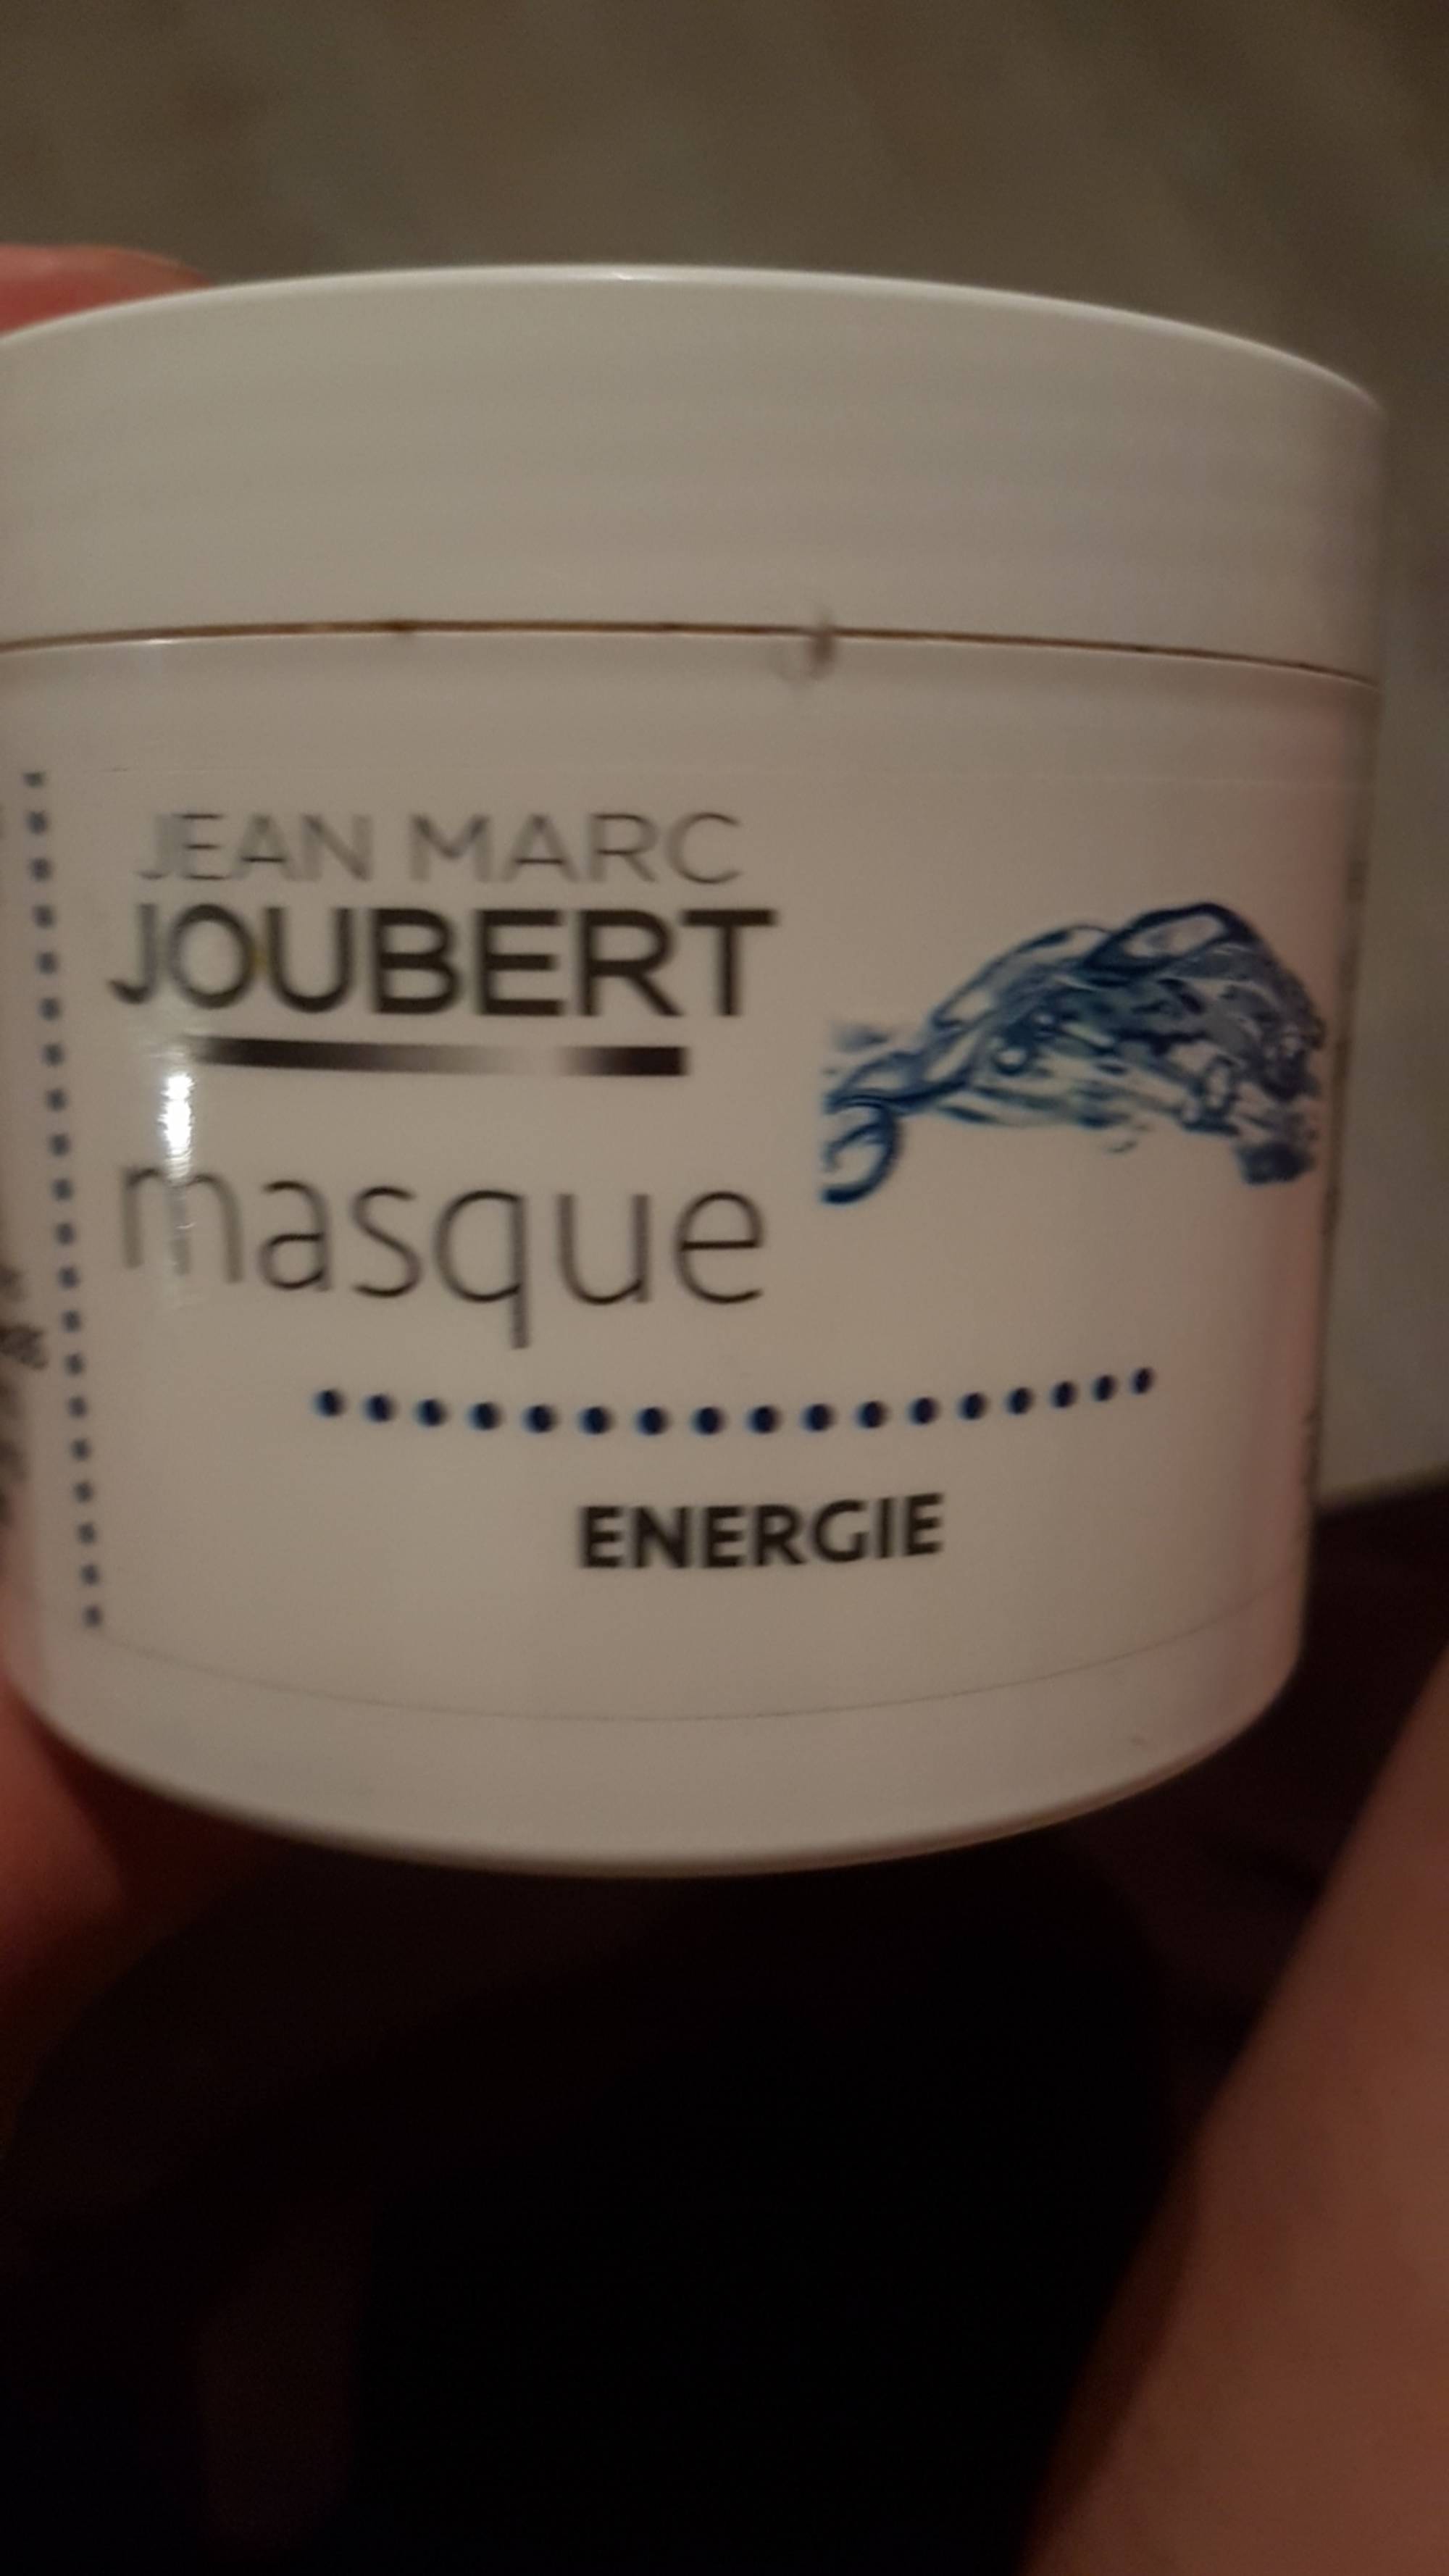 JEAN MARC JOUBERT - Energie - Masque